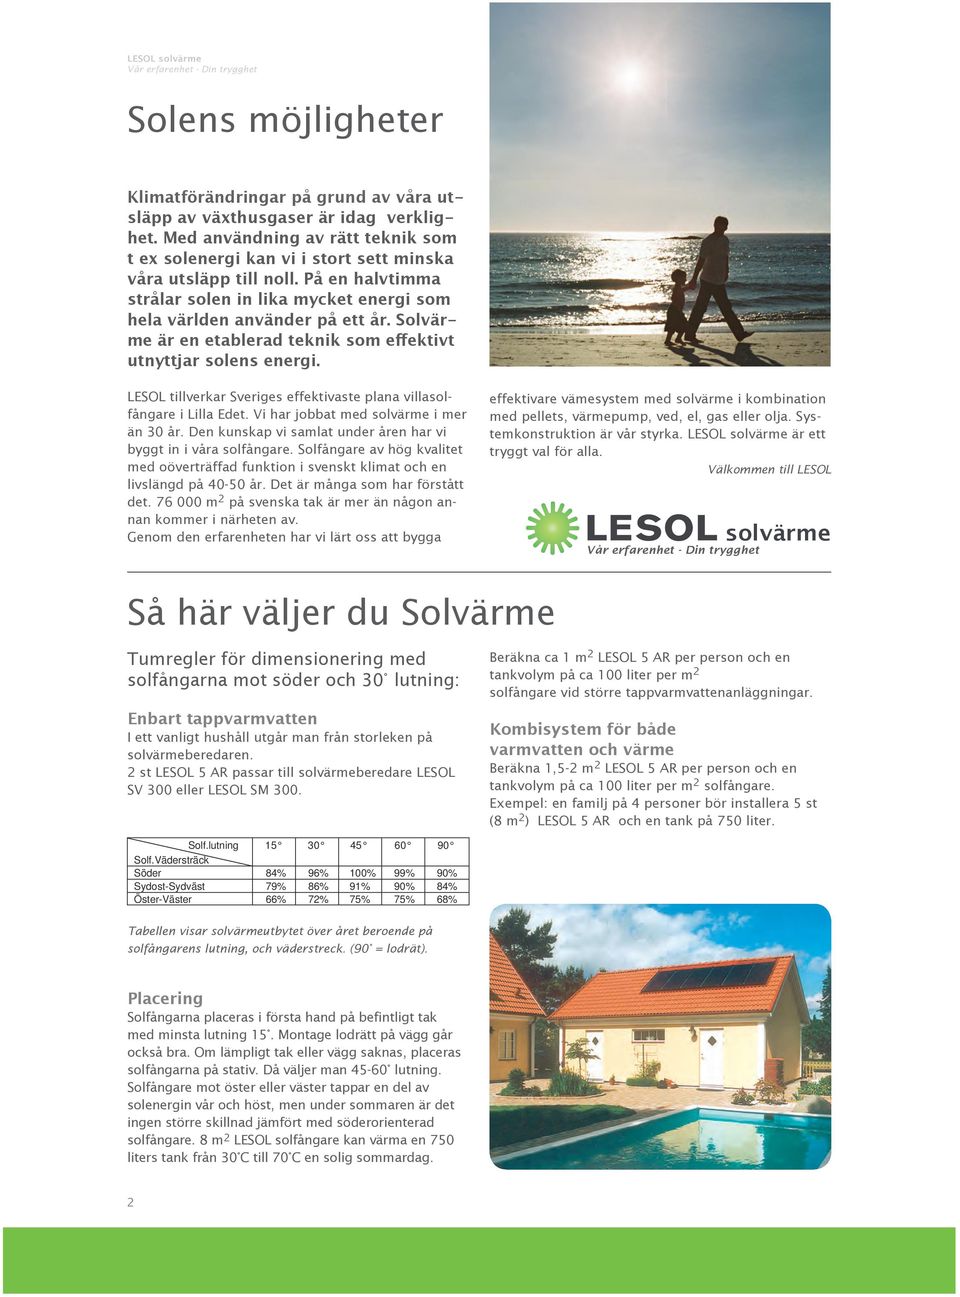 LESOL tillverkar Sveriges effektivaste plana villasolfångare i Lilla Edet. Vi har jobbat med solvärme i mer än 30 år. Den kunskap vi samlat under åren har vi byggt in i våra solfångare.